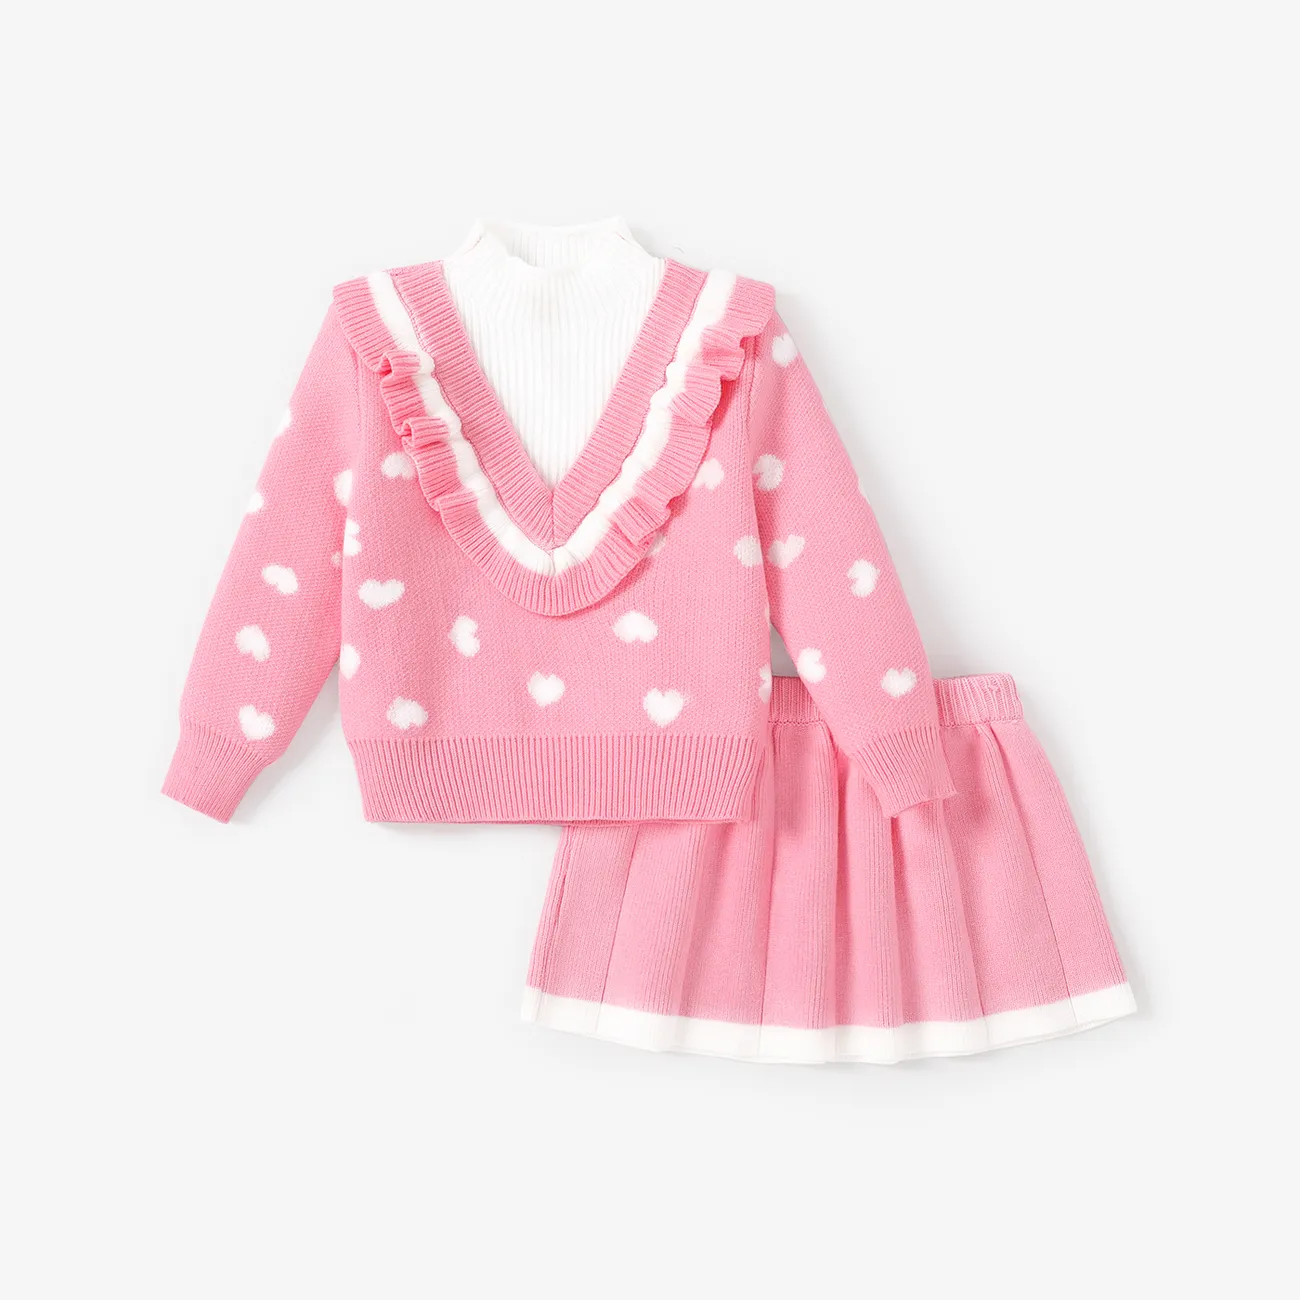 2件 小童 女 層次 甜美 套裝裙 粉色 big image 1